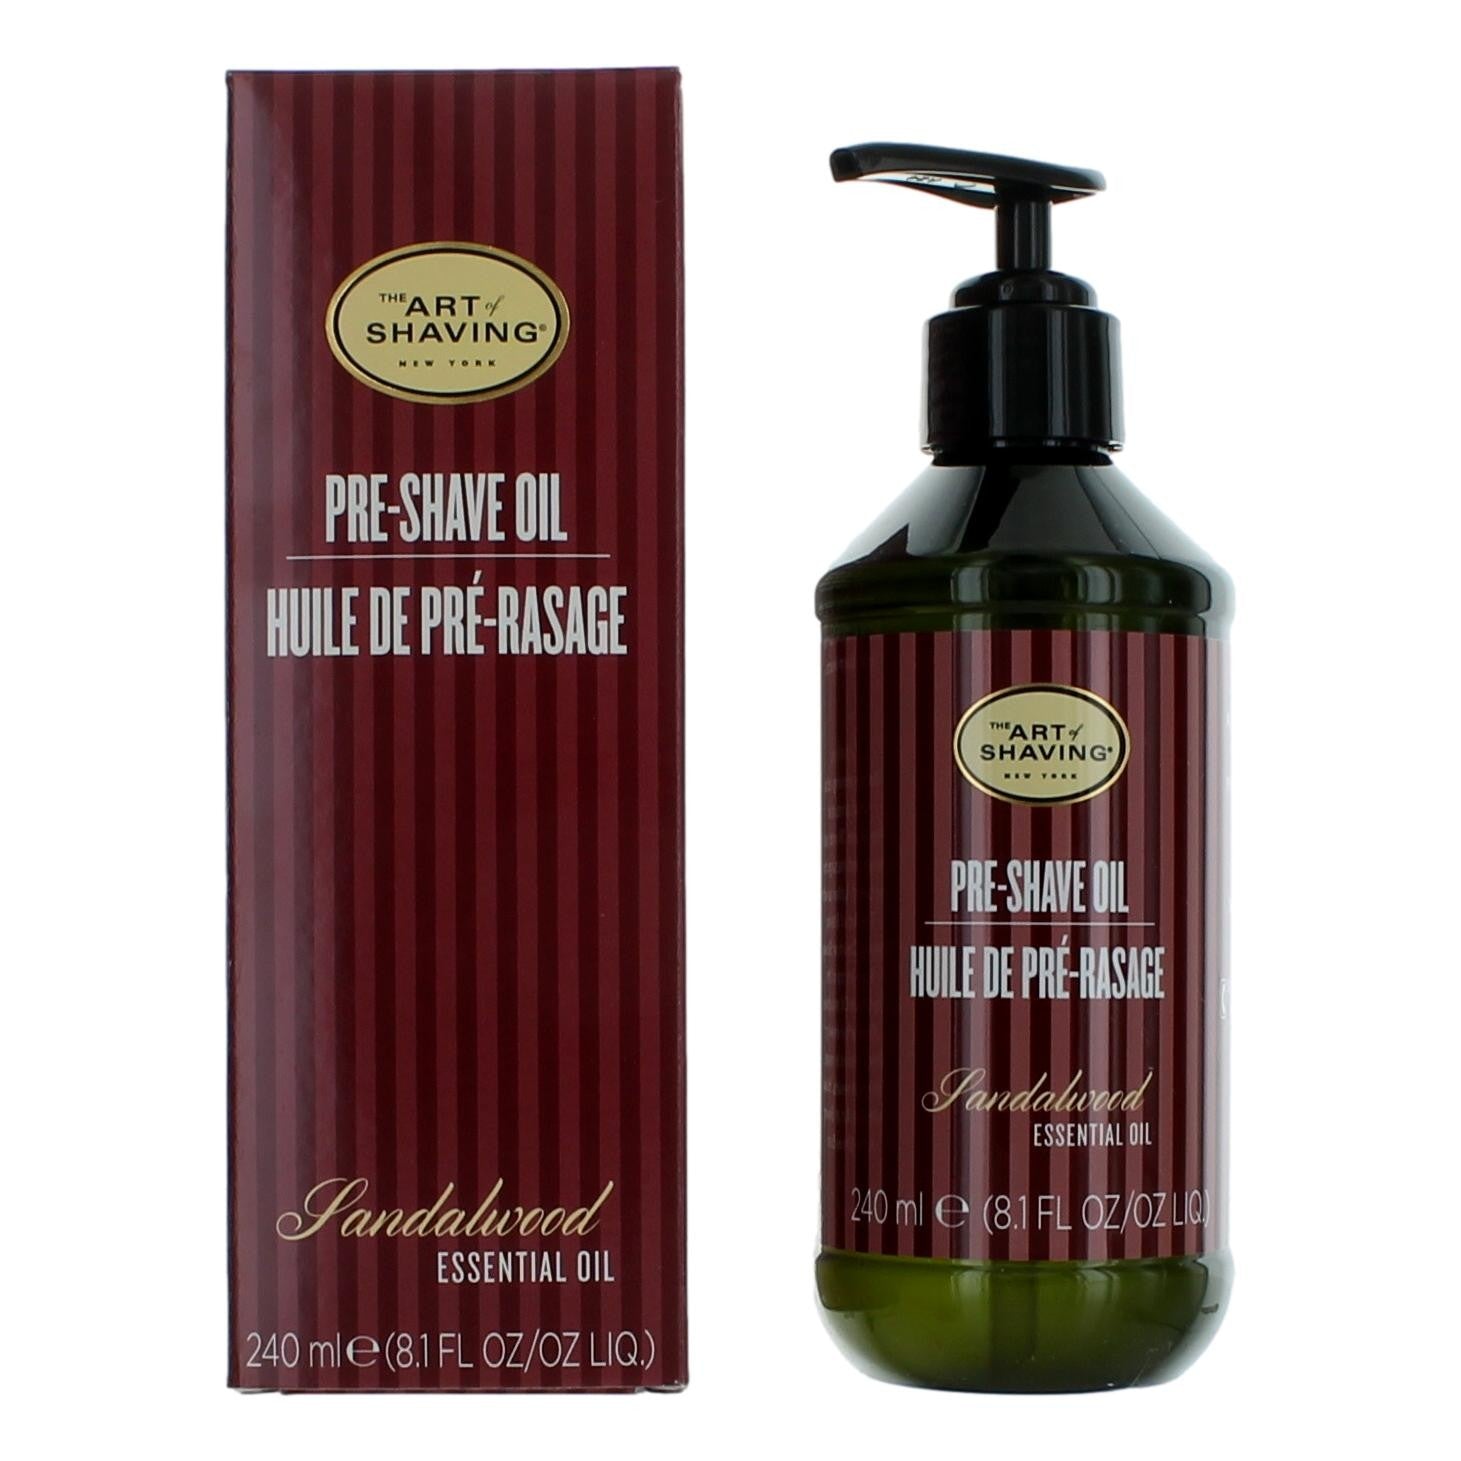 The Art Of Shaving Sandalwood by The Art of Shaving, 8.1oz Pre-Shave Oil men